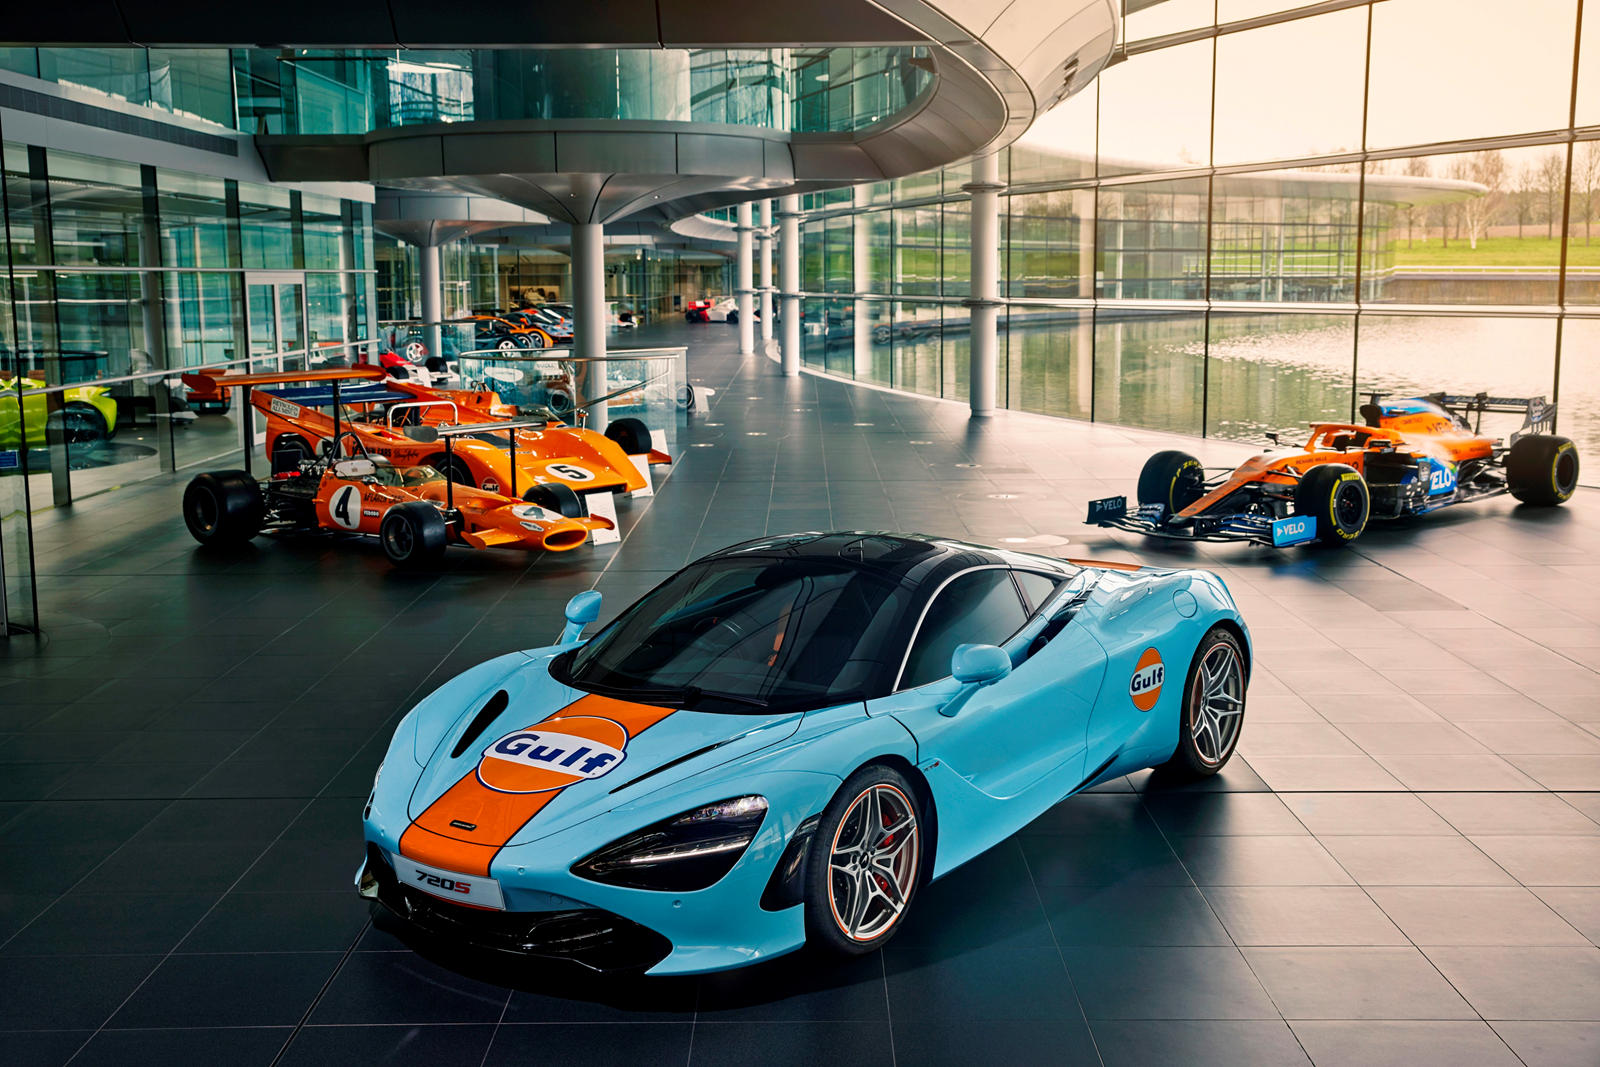 Майк Флюитт, генеральный директор McLaren Automotive, говорит: «Этот проект является демонстрацией возможностей MSO и перекликается с недавней полной реставрацией McLaren F1 GTR 25R, автомобиля, участвовавшего в гонках в 1990-х годах. Создан 720S с т